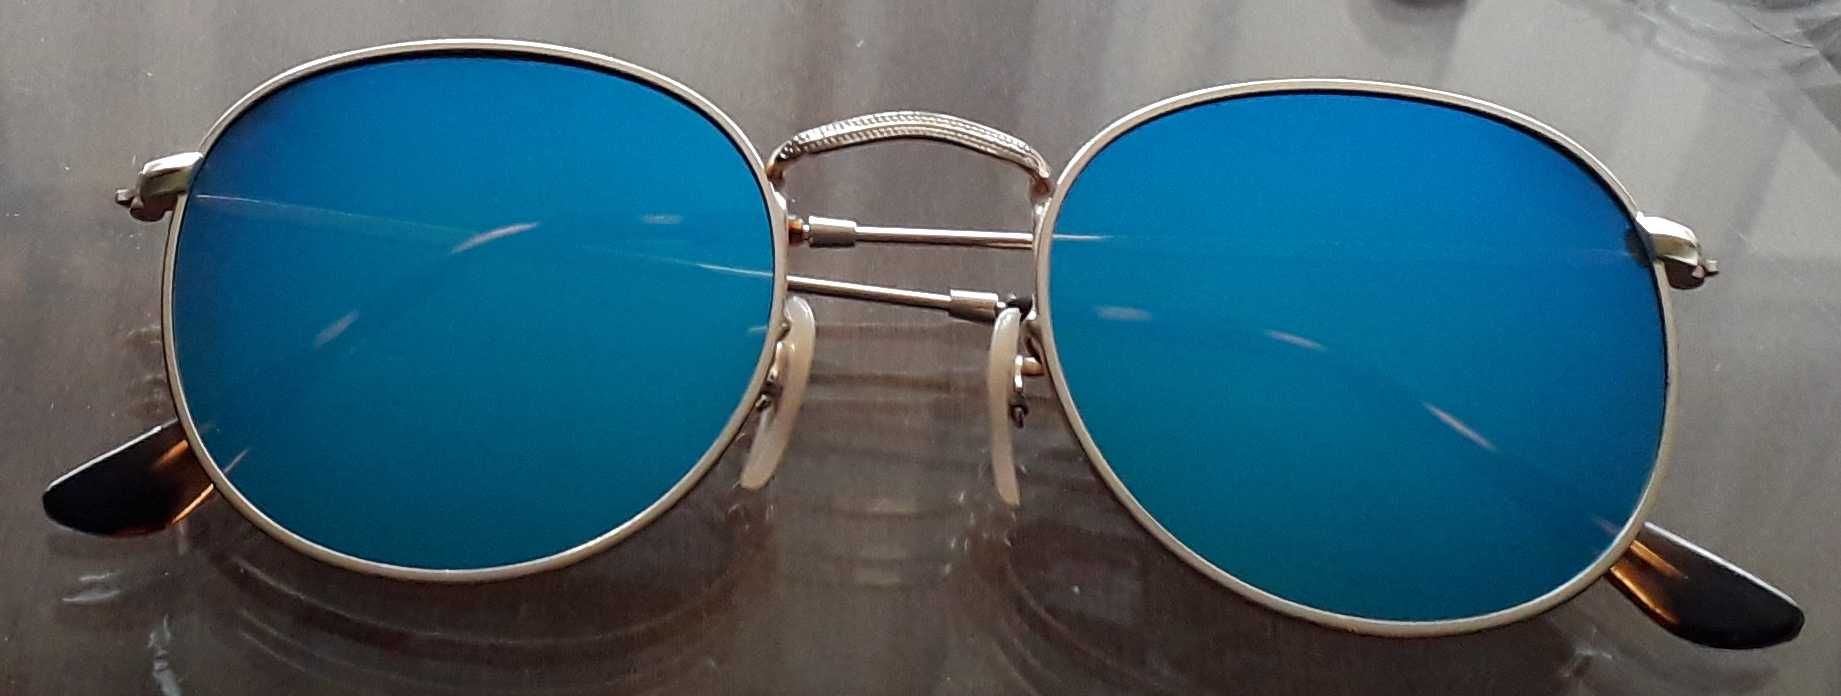 Nowe ( bez metki), okulary przeciwsłoneczne, niebieskie.